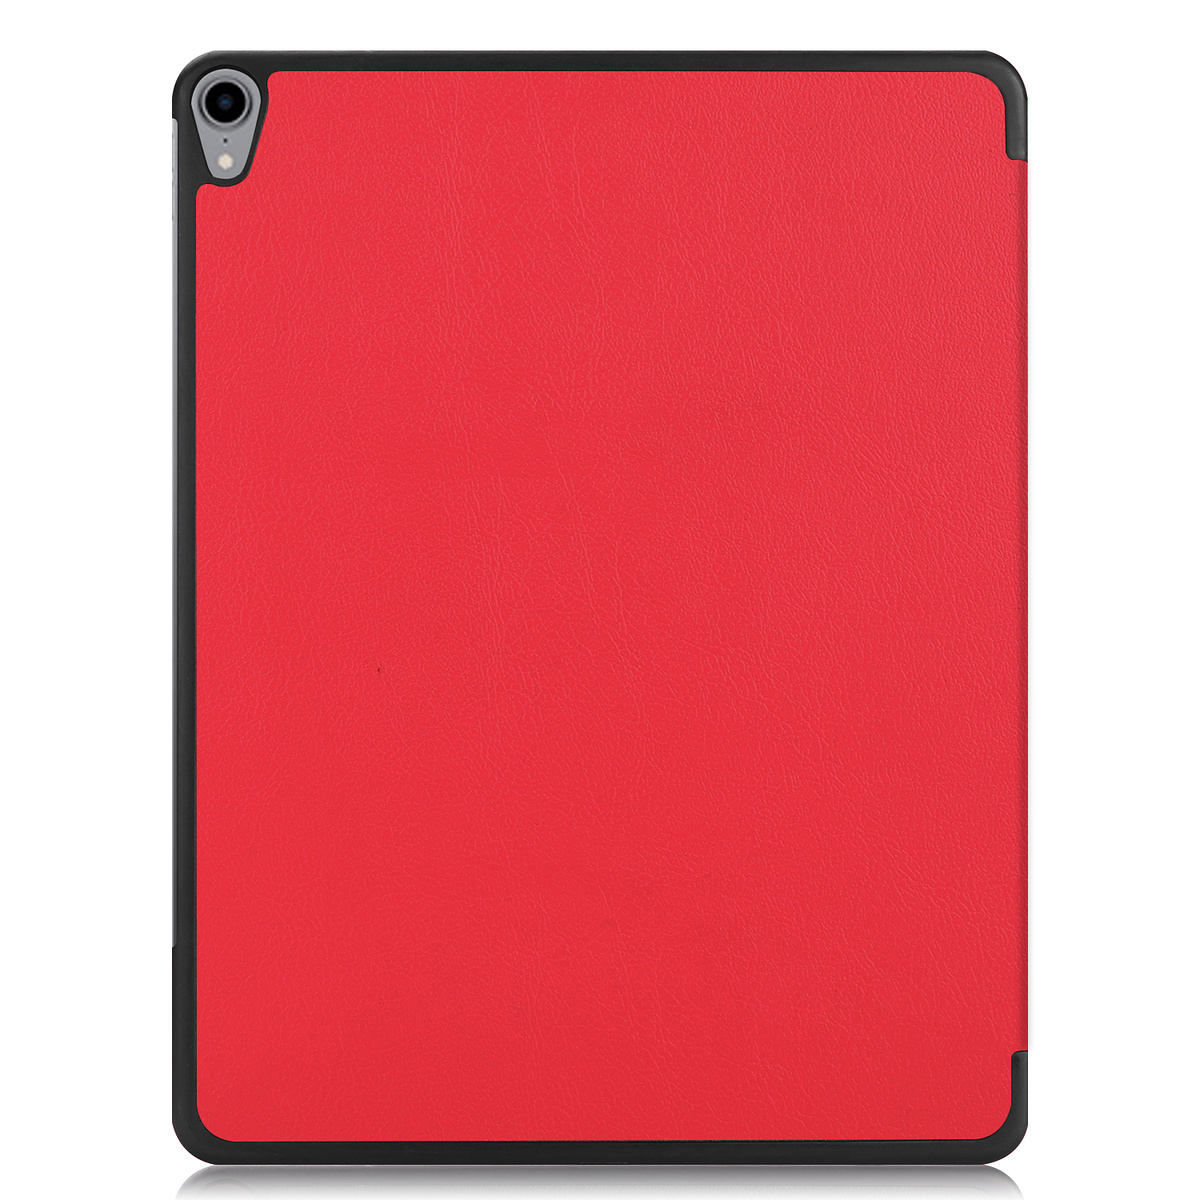 Fodral med ställ, iPad Pro 12.9 (2018), röd